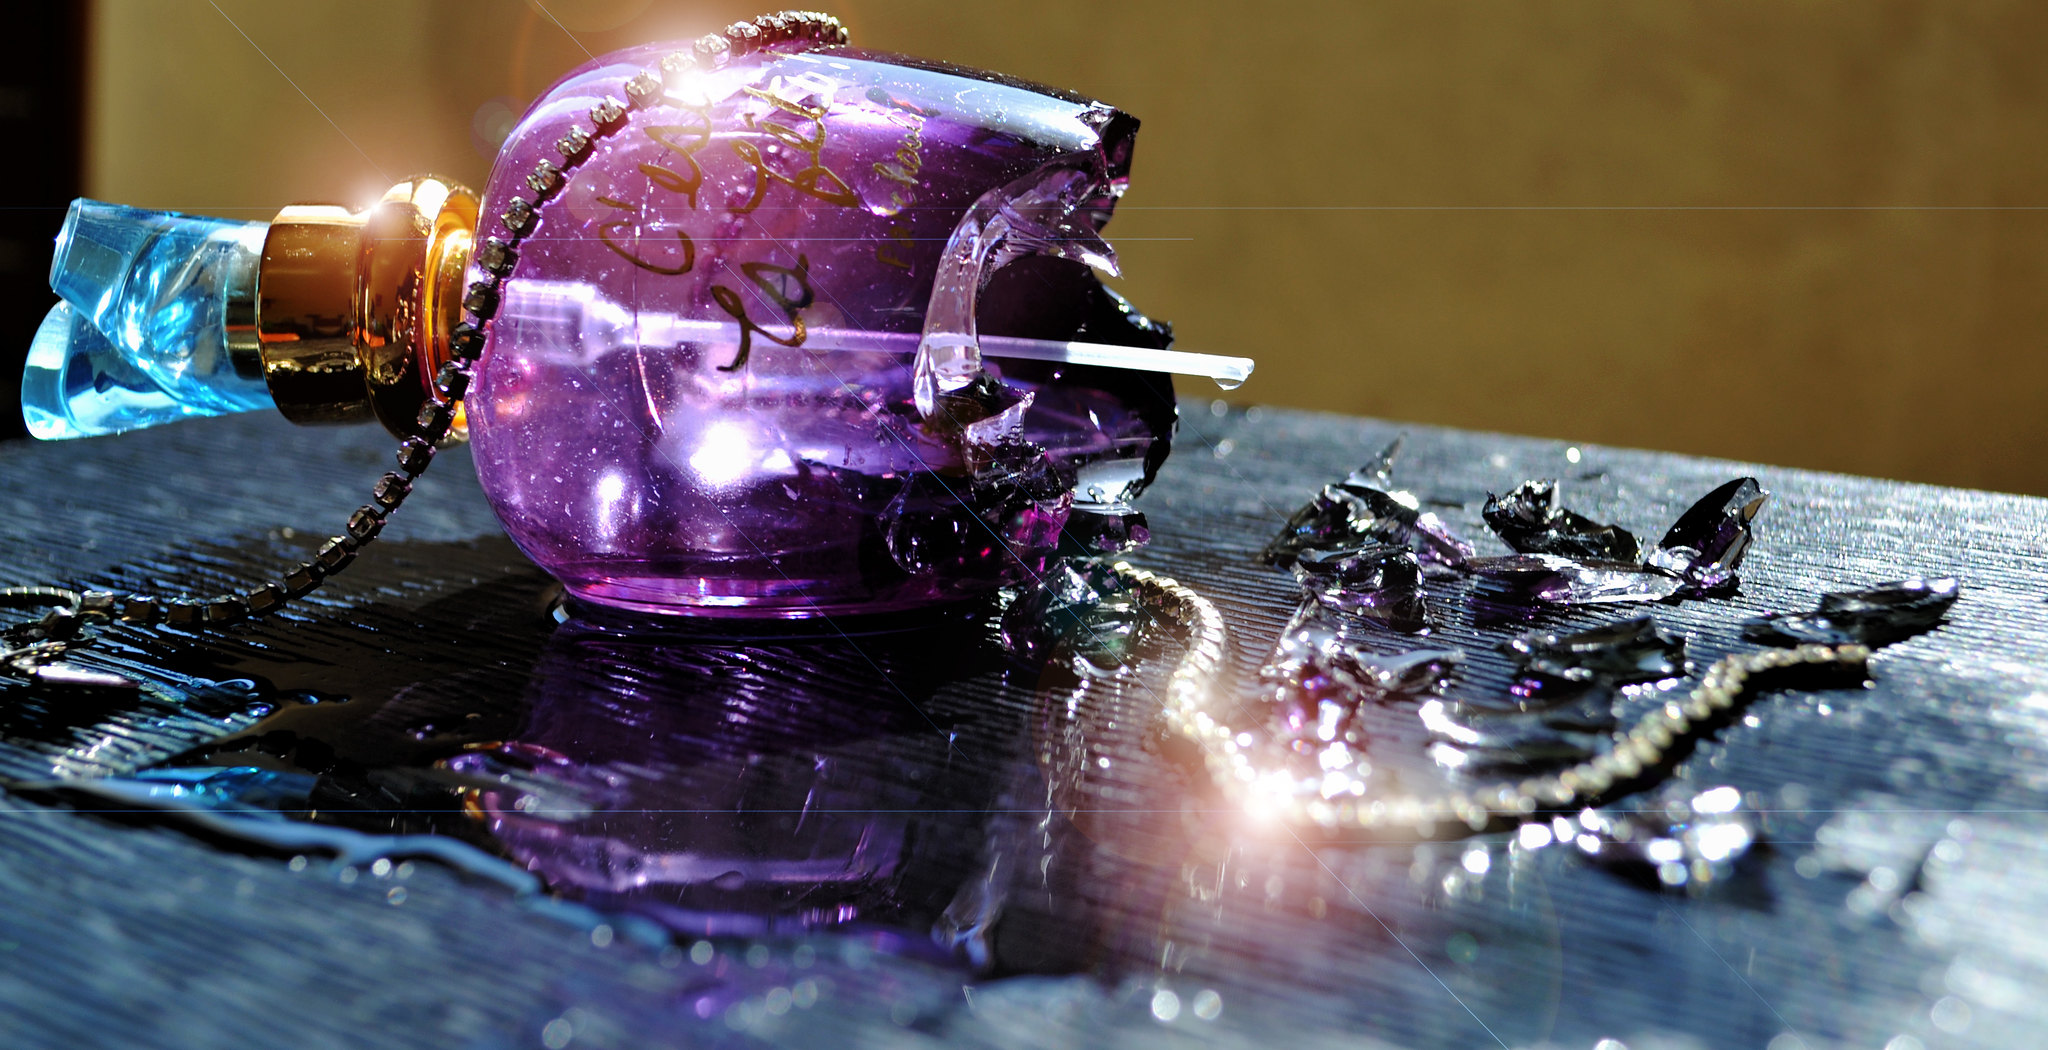 Zerbrochene Parfümflasche | Quelle: Flickr